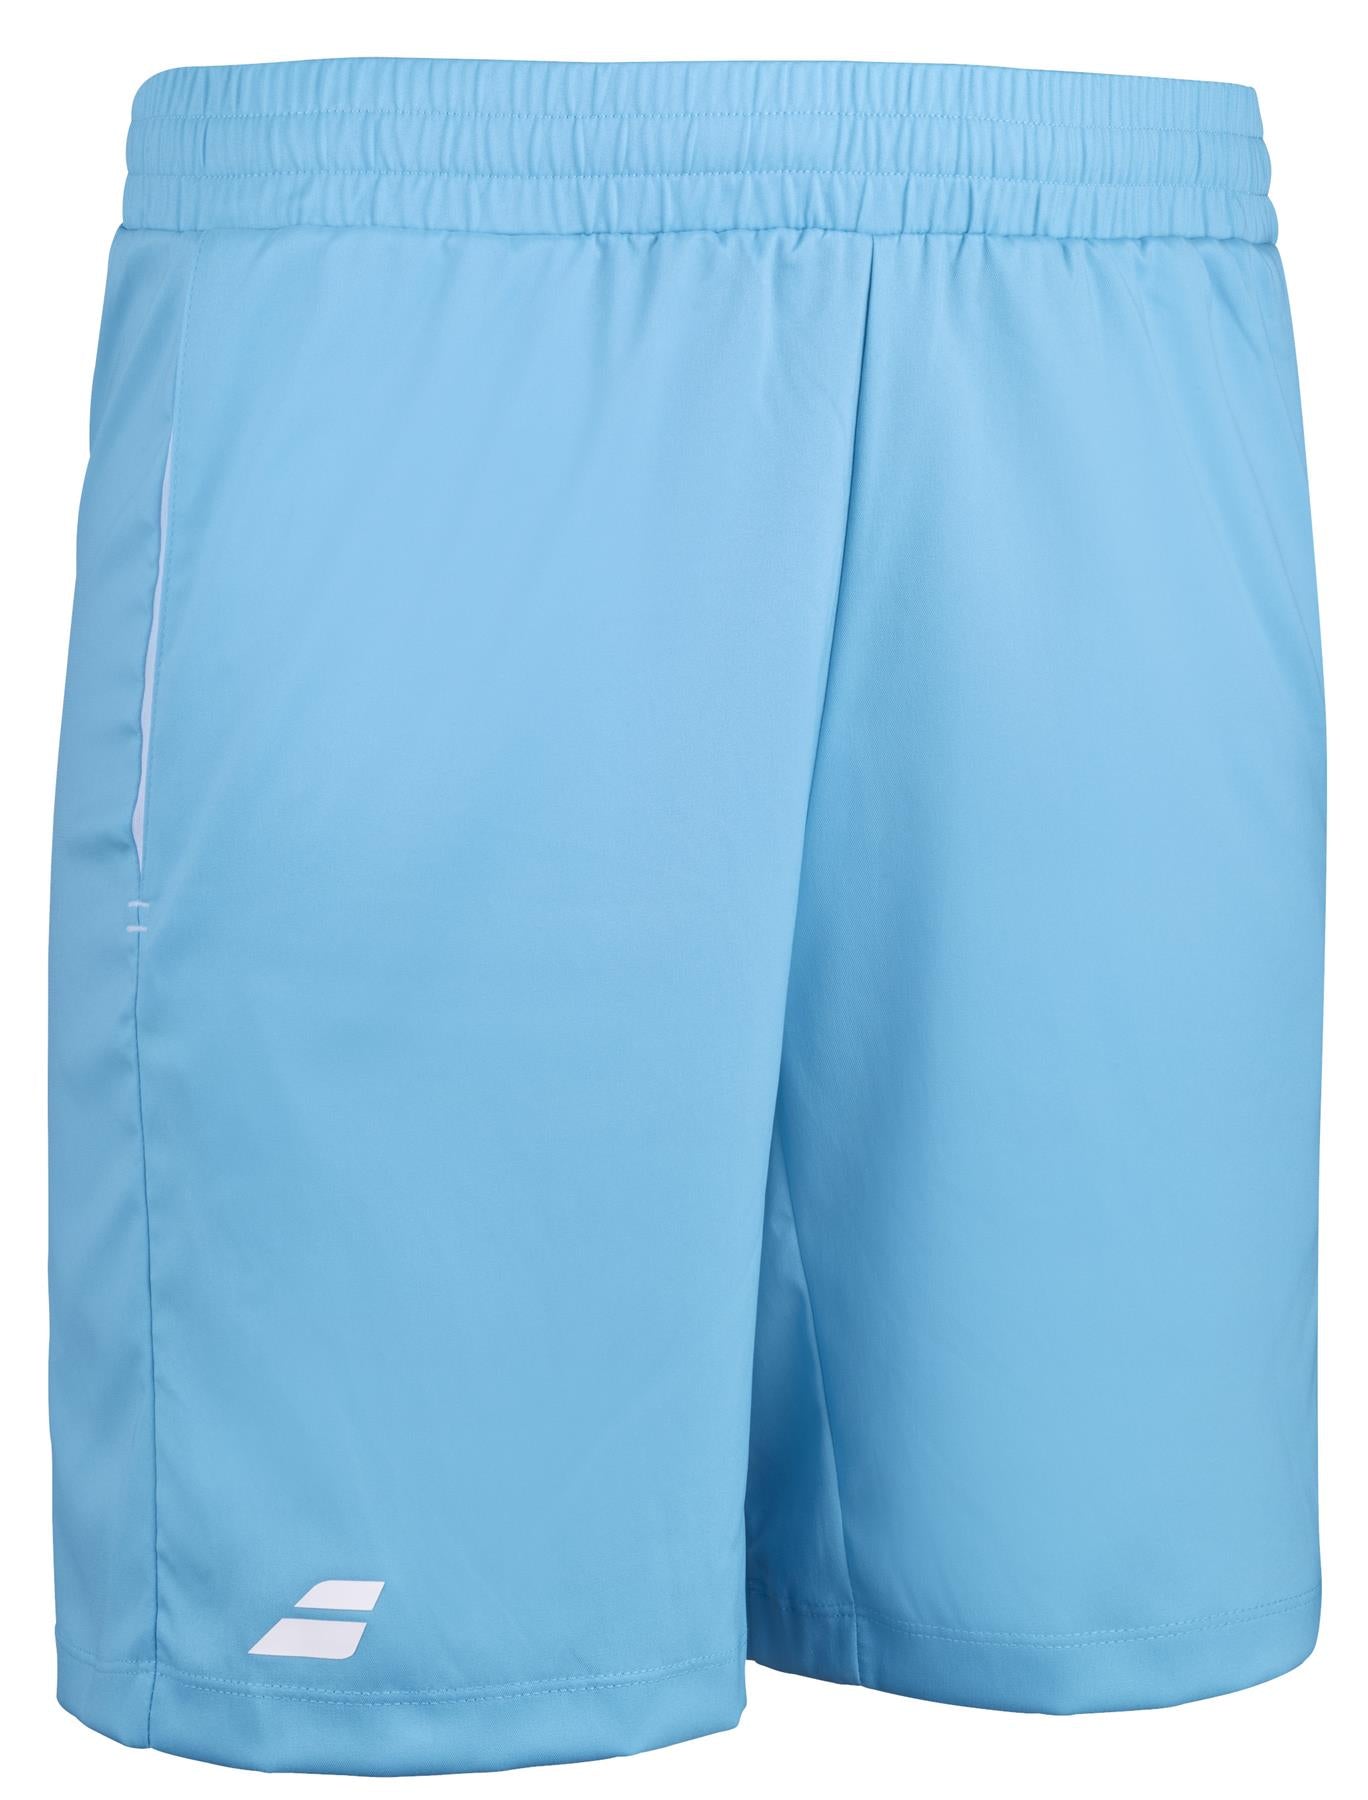 Babolat Play Mens Tennis Shorts - Cyan Blue - Angle